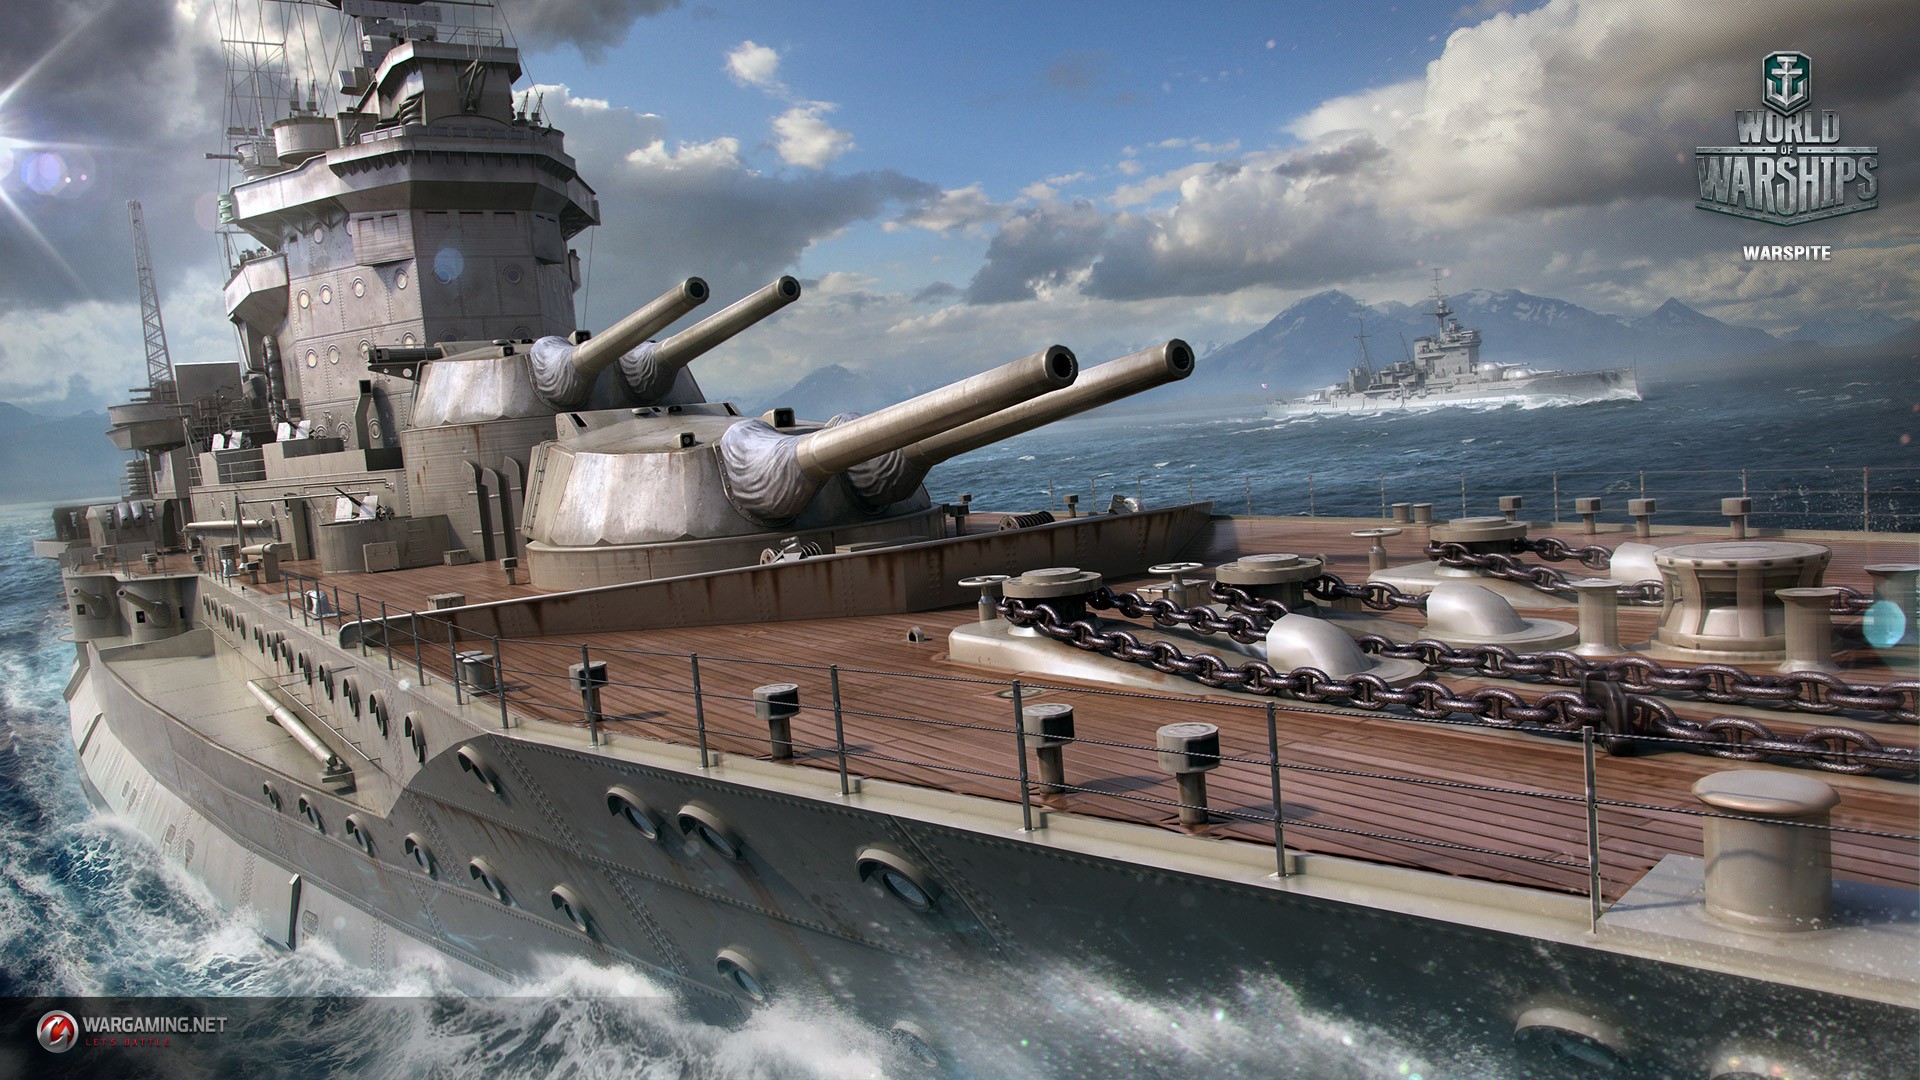 General 1920x1080 wargaming World of Warships  ship video games warship vehicle military vehicle PC gaming HMS Warspite